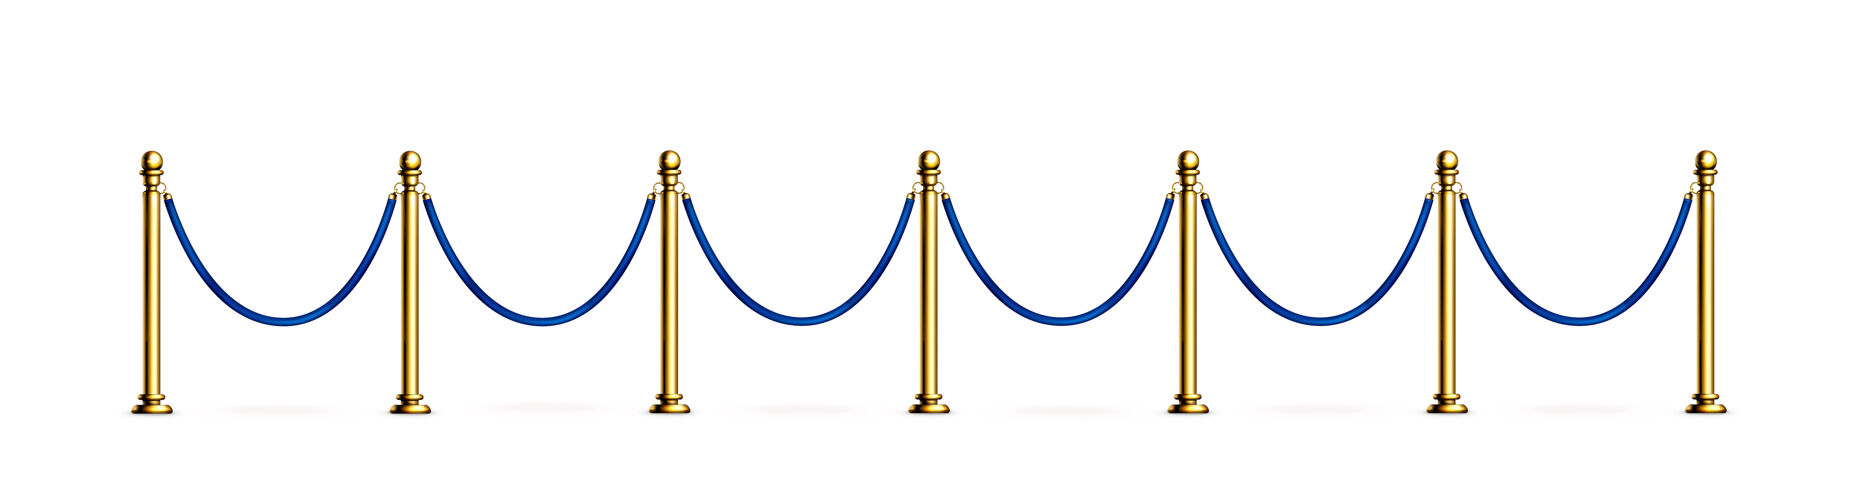 金属蓝色的绳索屏障 金色的支柱 天鹅绒的入口栅栏大厅名人电影